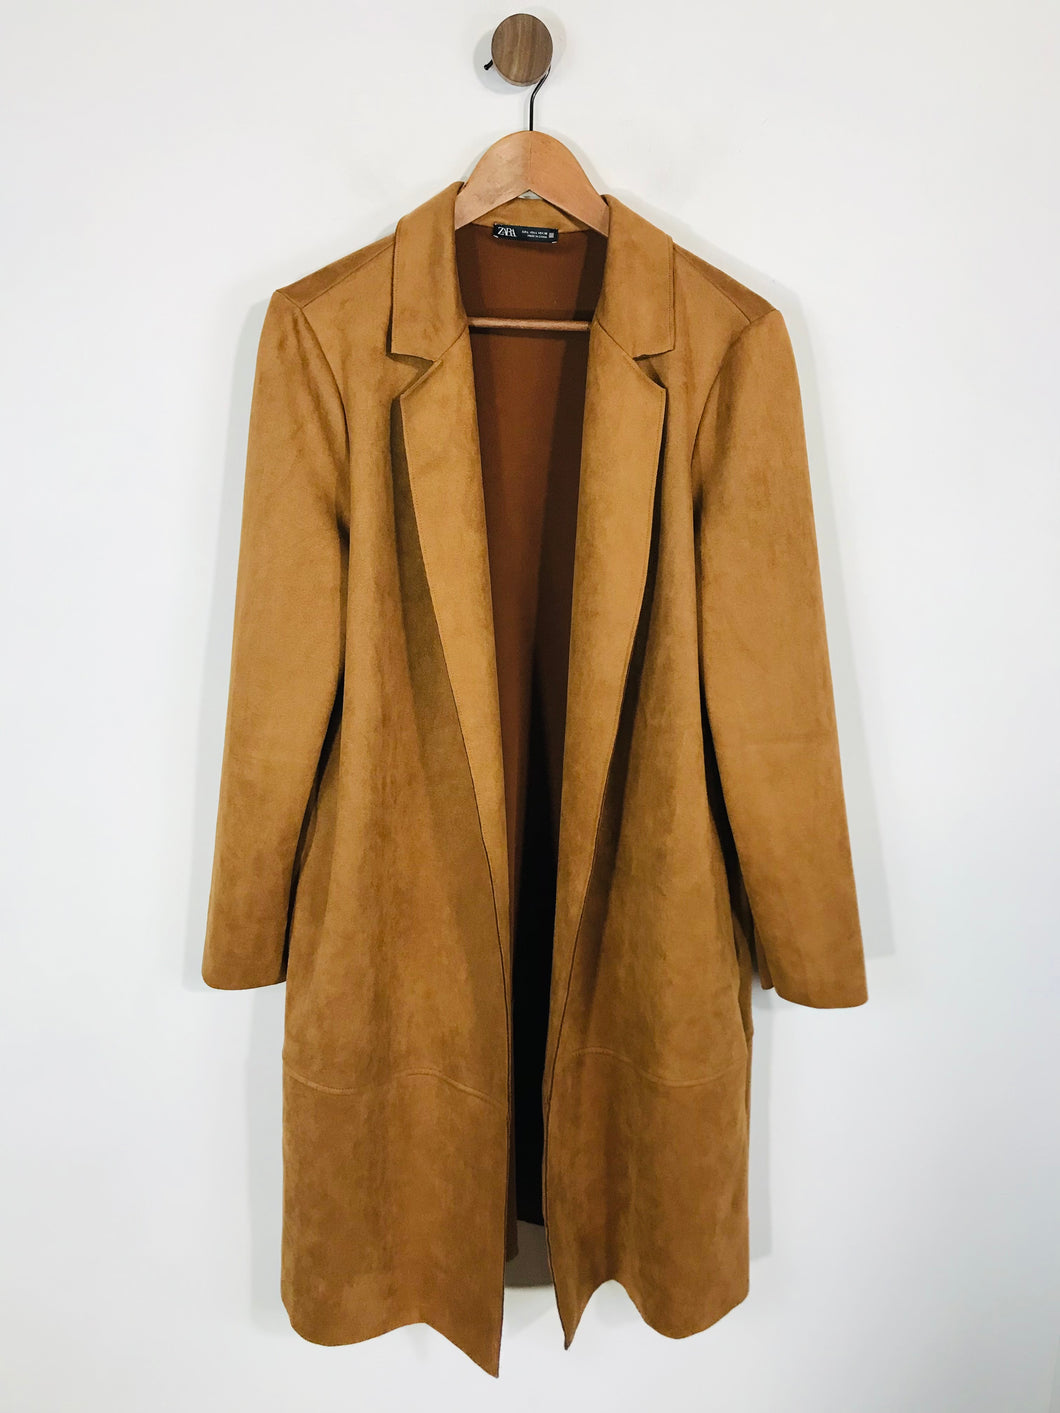 Zara Women's Suede Overcoat Coat | L UK14 | Brown